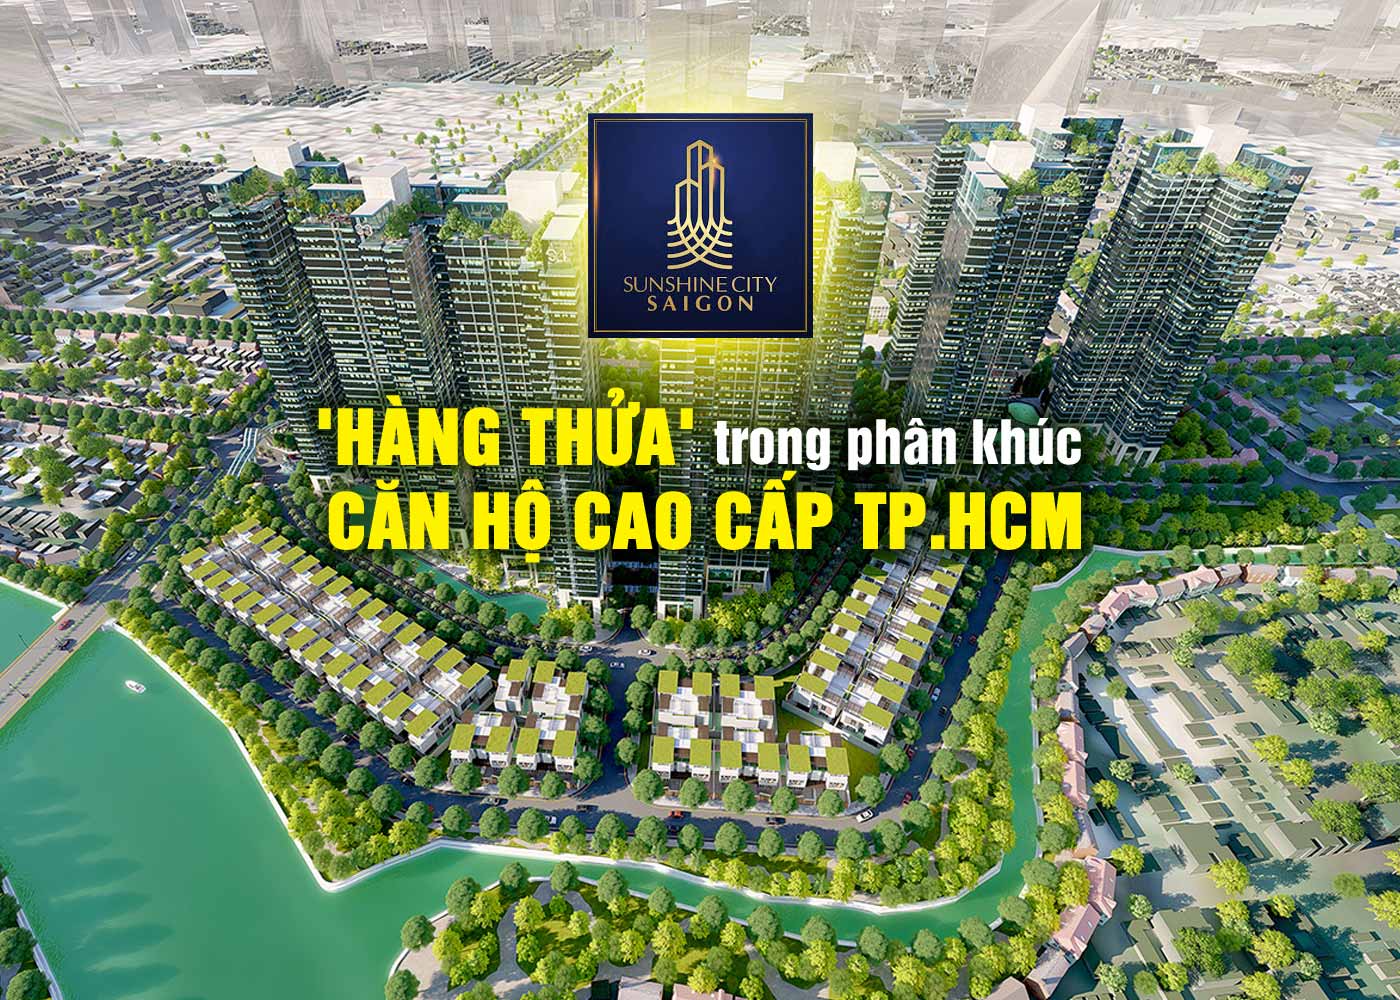 Sunshine City Sài Gòn - 'Hàng thửa' trong phân khúc căn hộ cao cấp TP.HCM - Ảnh 1